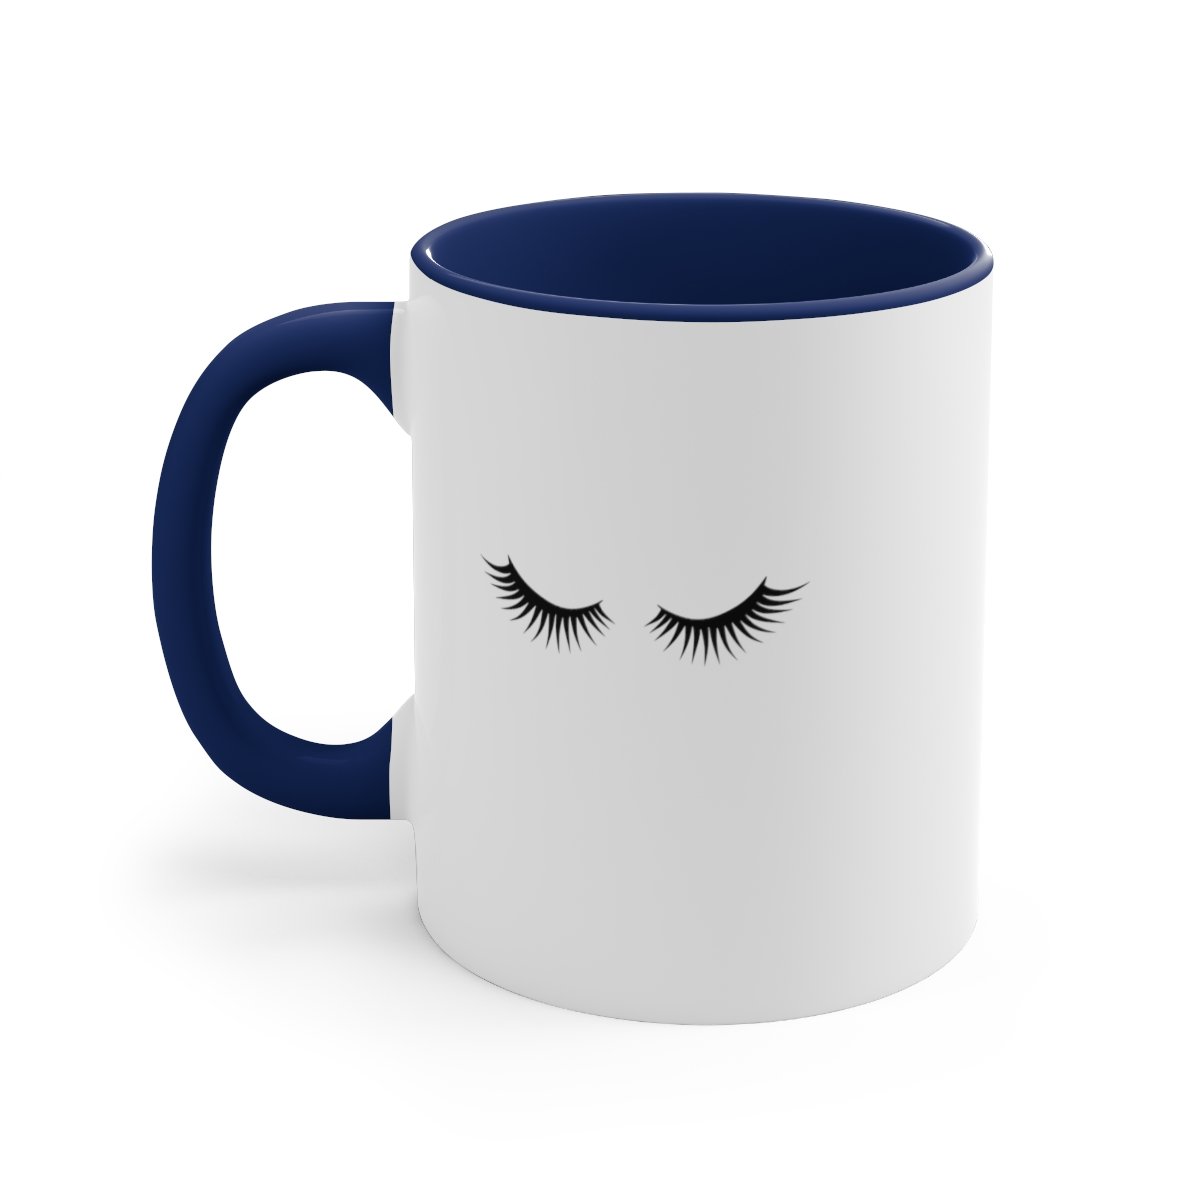 Taking It Easy Coffee Mug Blue